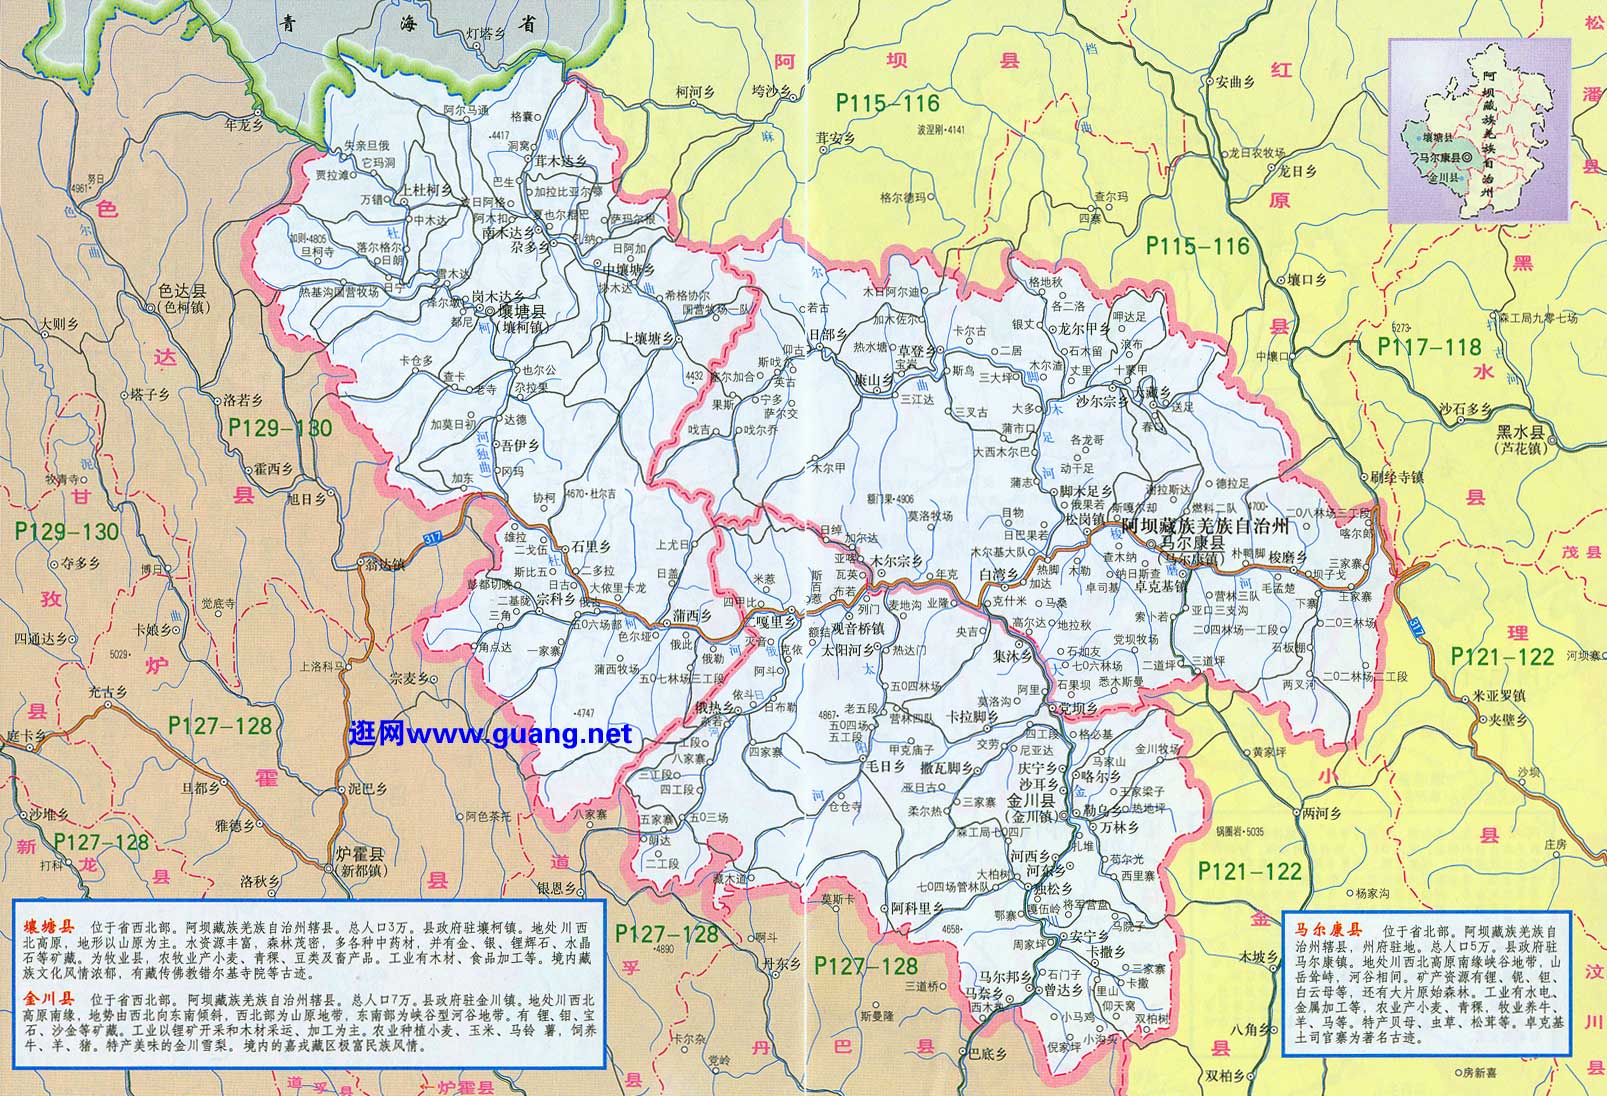 2015年版马尔康地图,壤塘地图,金川地图